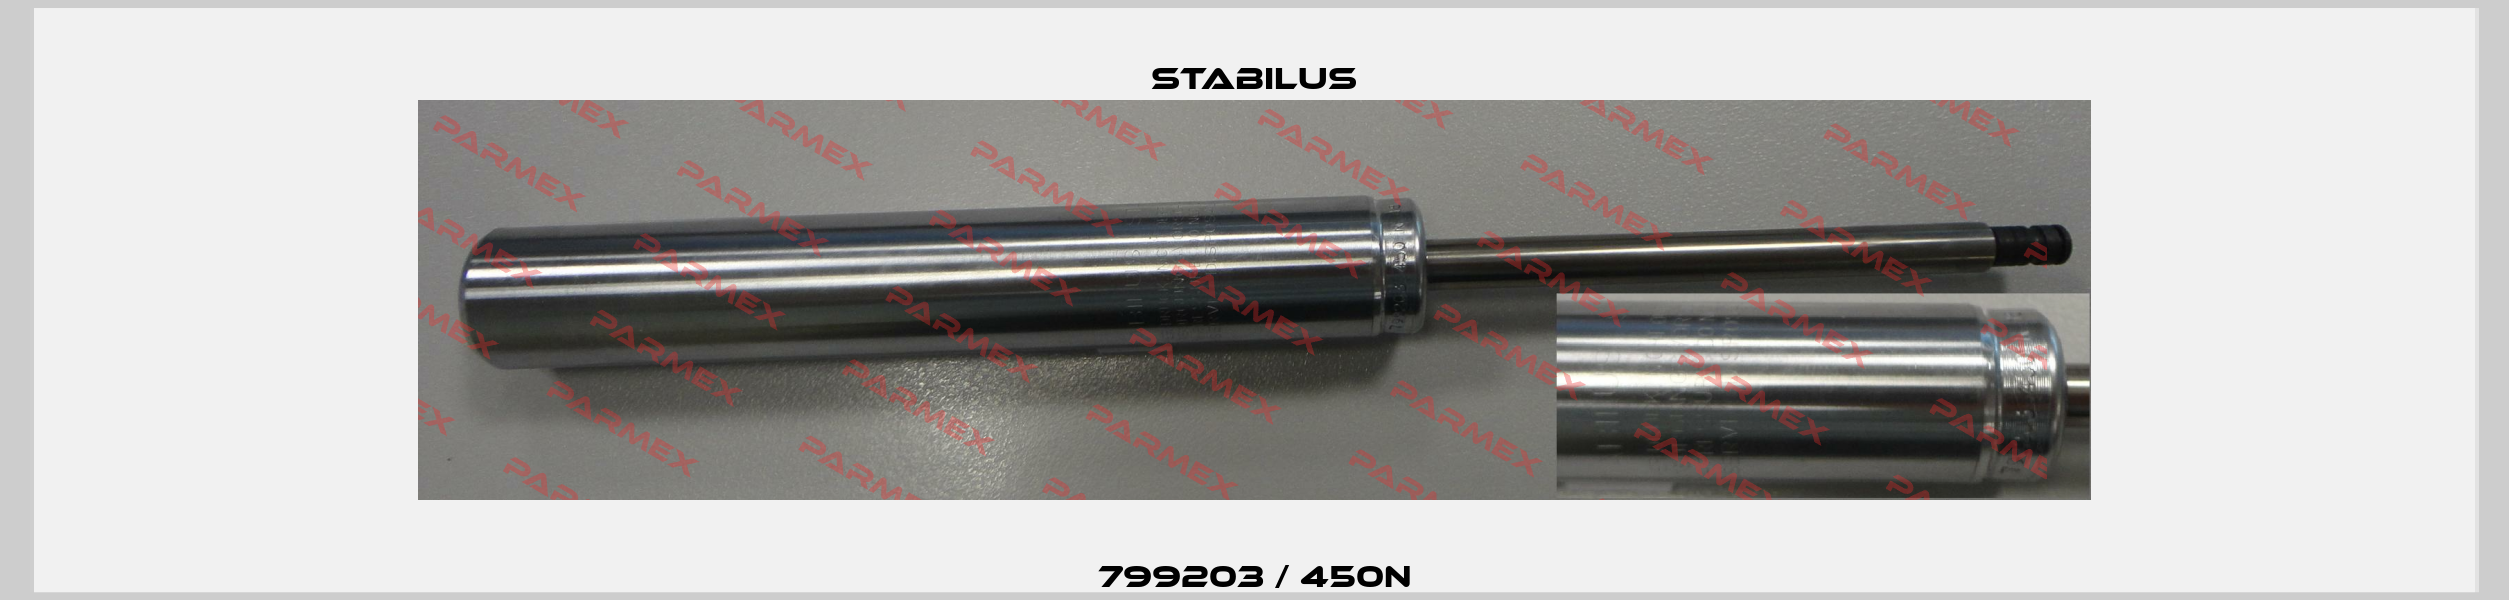 799203 / 450N Stabilus